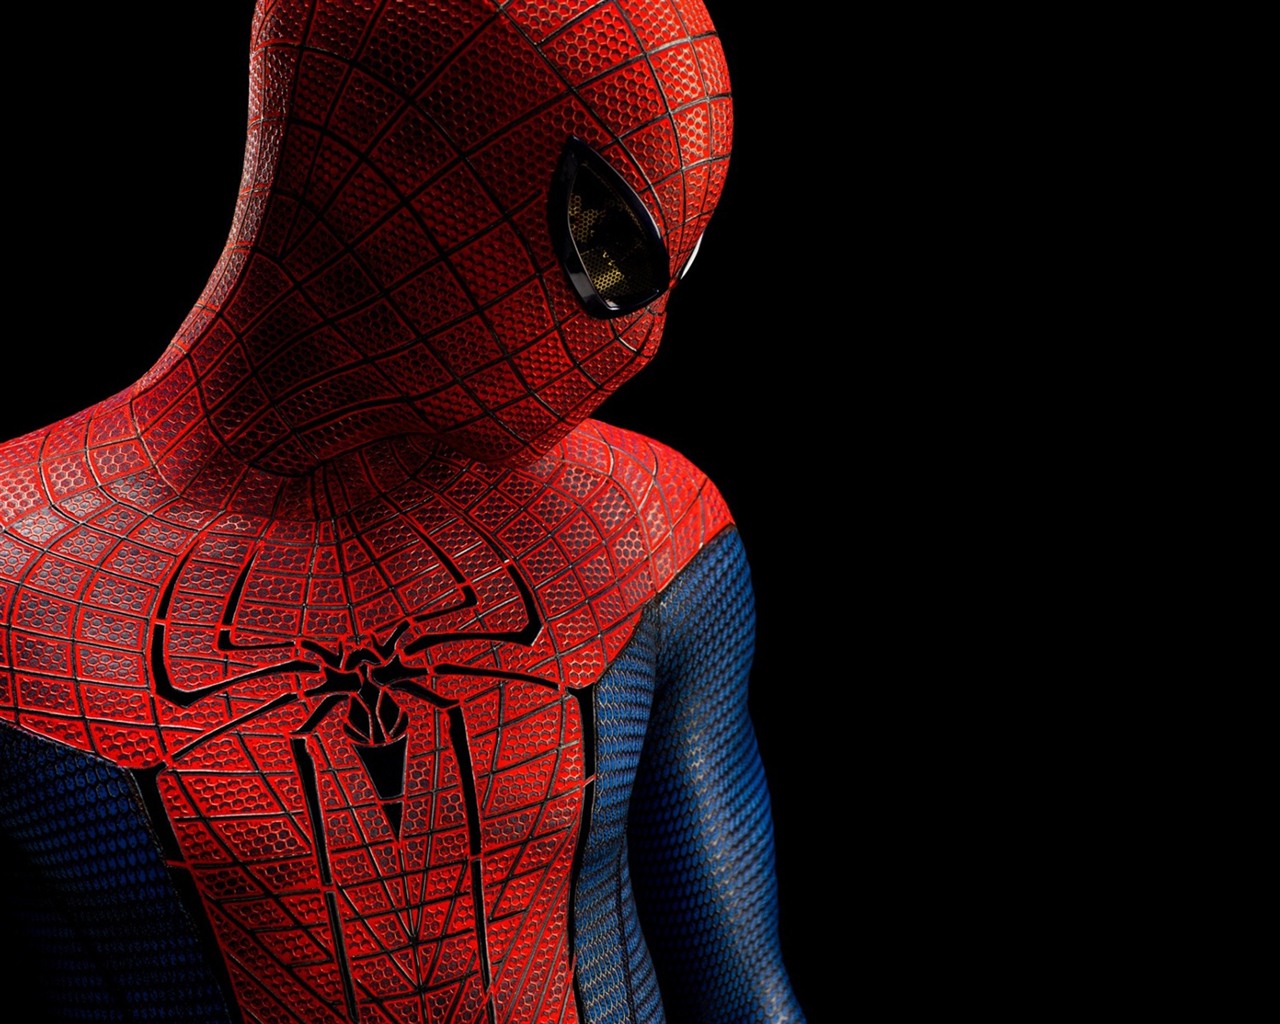 The Amazing Spider-Man 2012 惊奇蜘蛛侠2012 壁纸专辑14 - 1280x1024